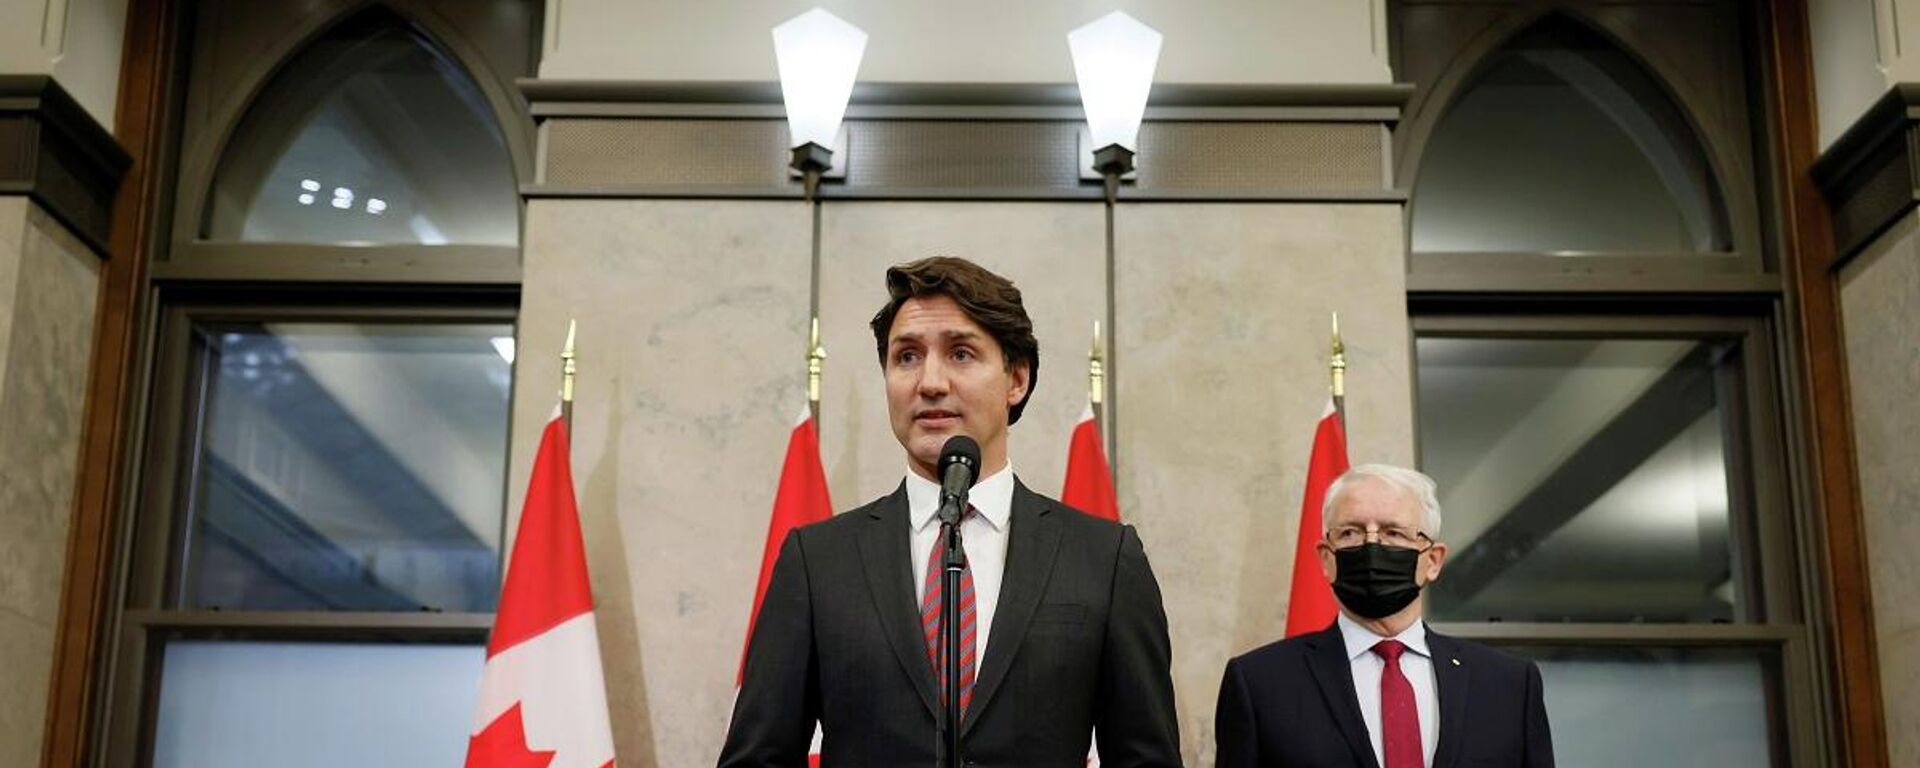 Kanada Başbakanı Justin Trudeau - Sputnik Türkiye, 1920, 25.09.2021